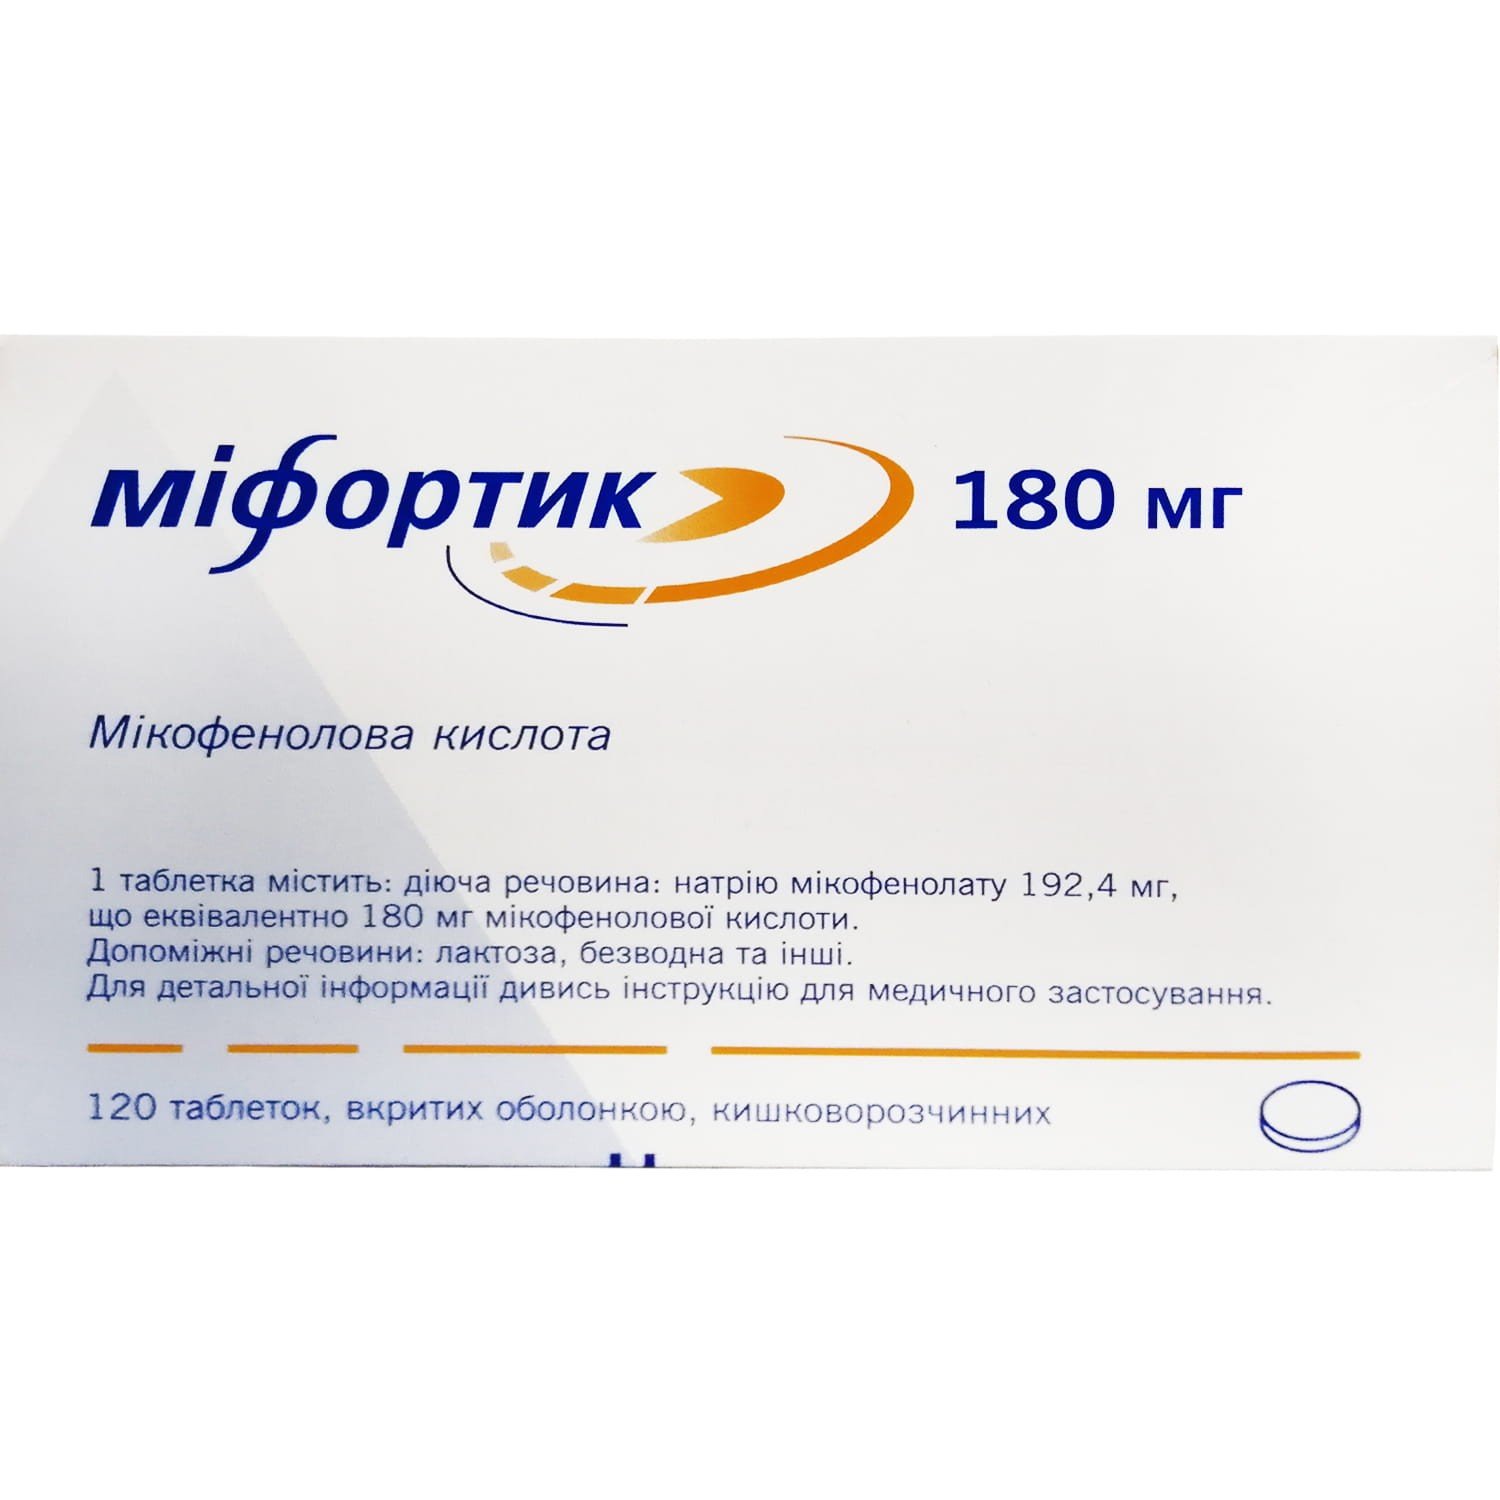 Міфортик таблетки кишечнорозчинні по 180 мг, 120 шт.: інструкція, ціна .